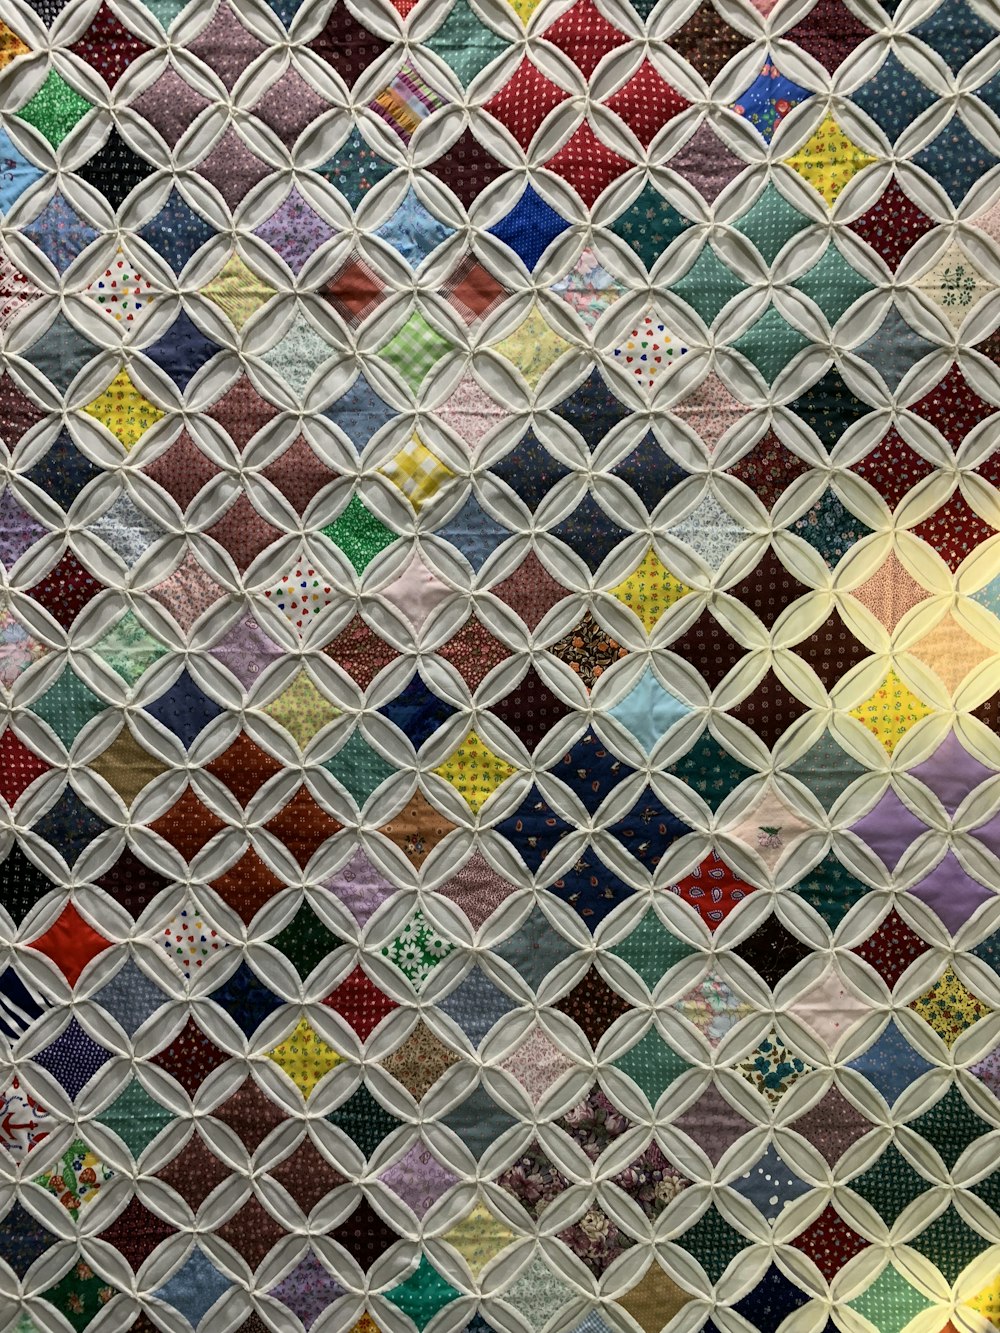 Nahaufnahme eines Quilts mit vielen verschiedenen Farben